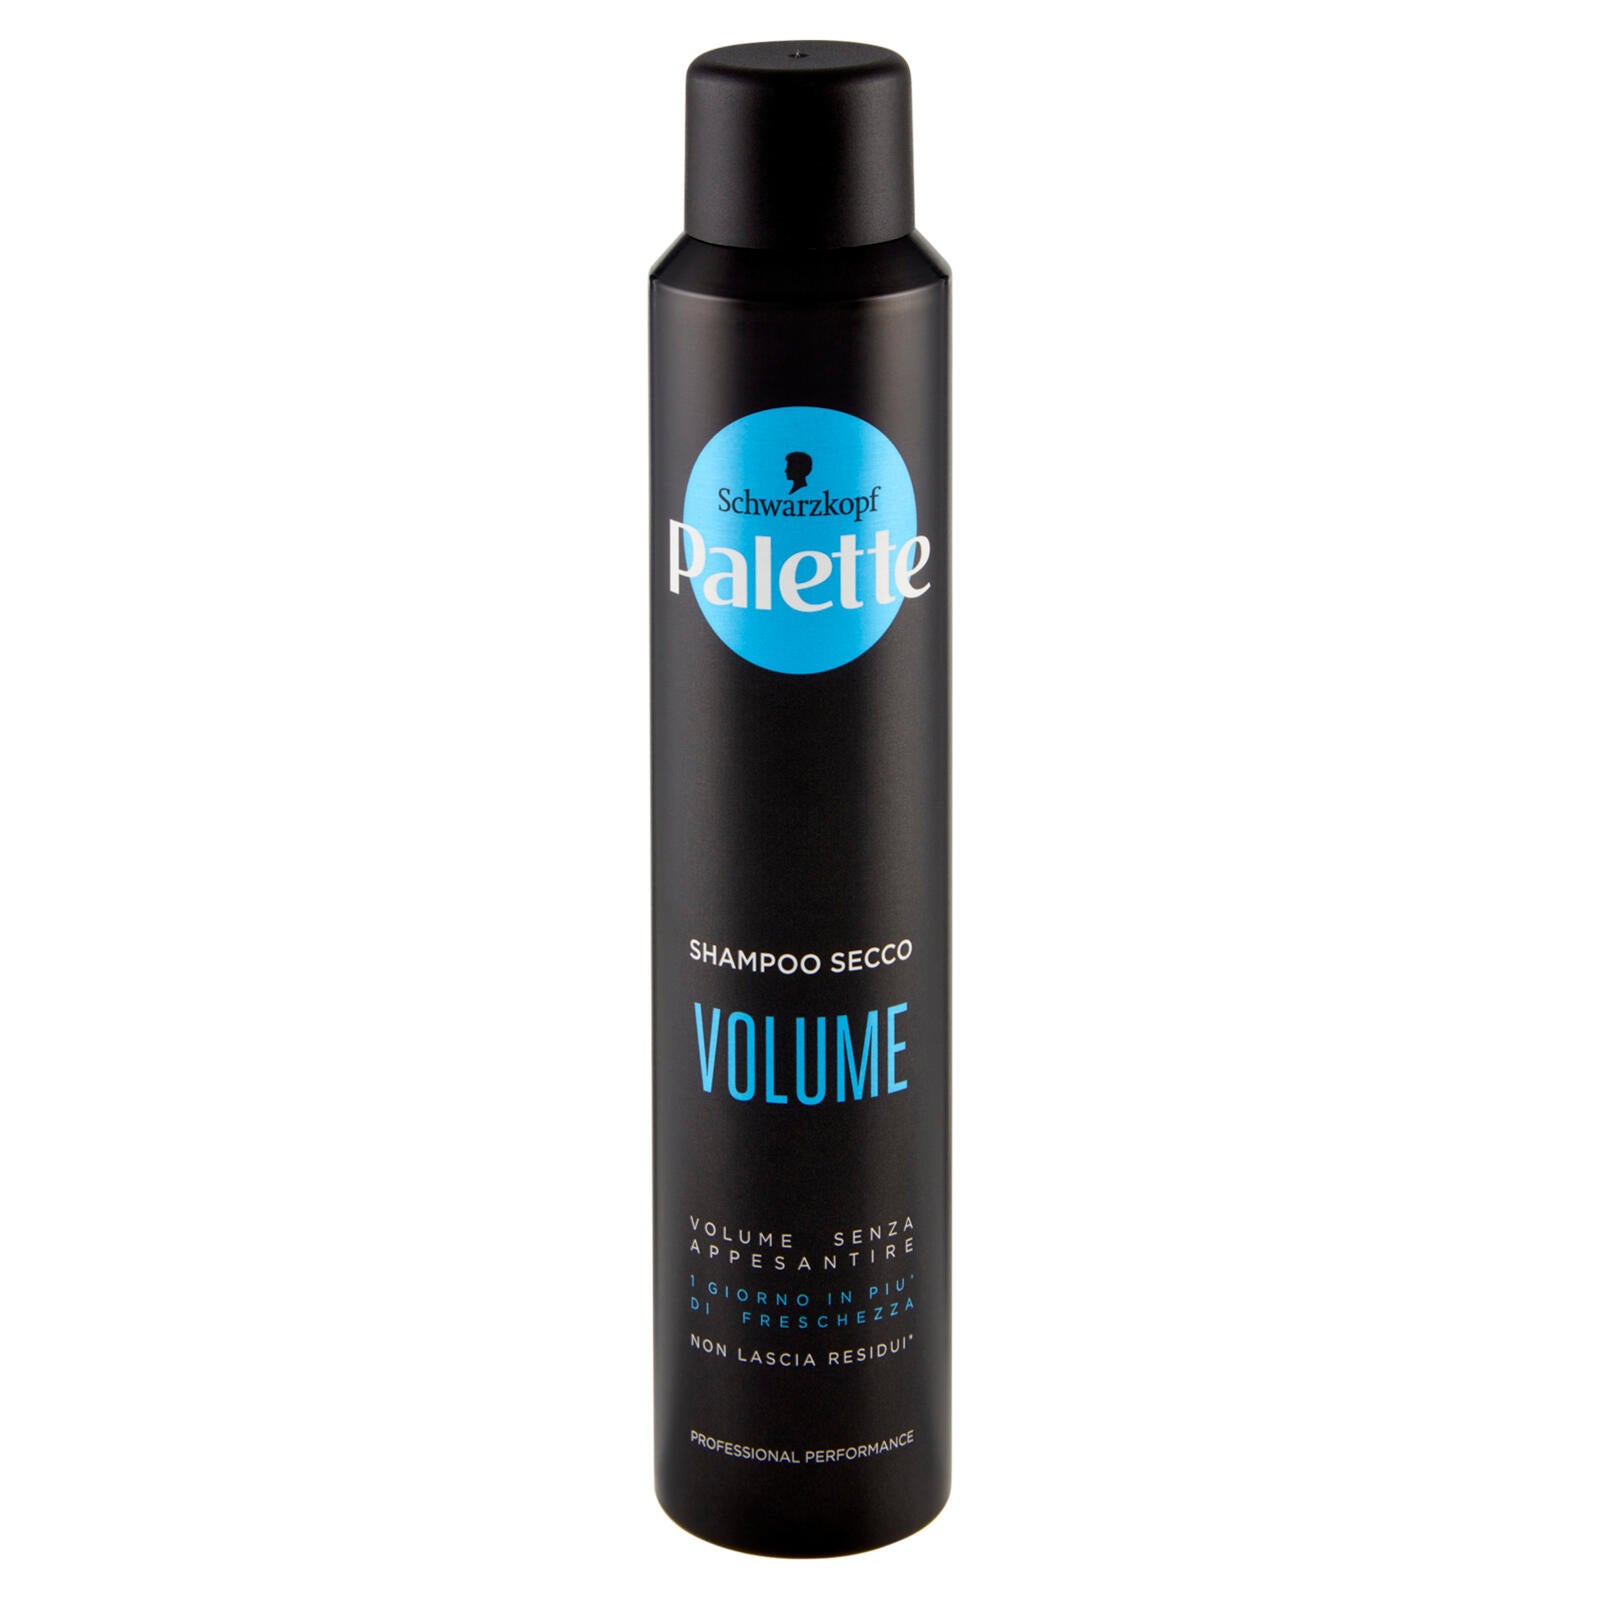 Palette Shampoo Secco Volume 200 ml